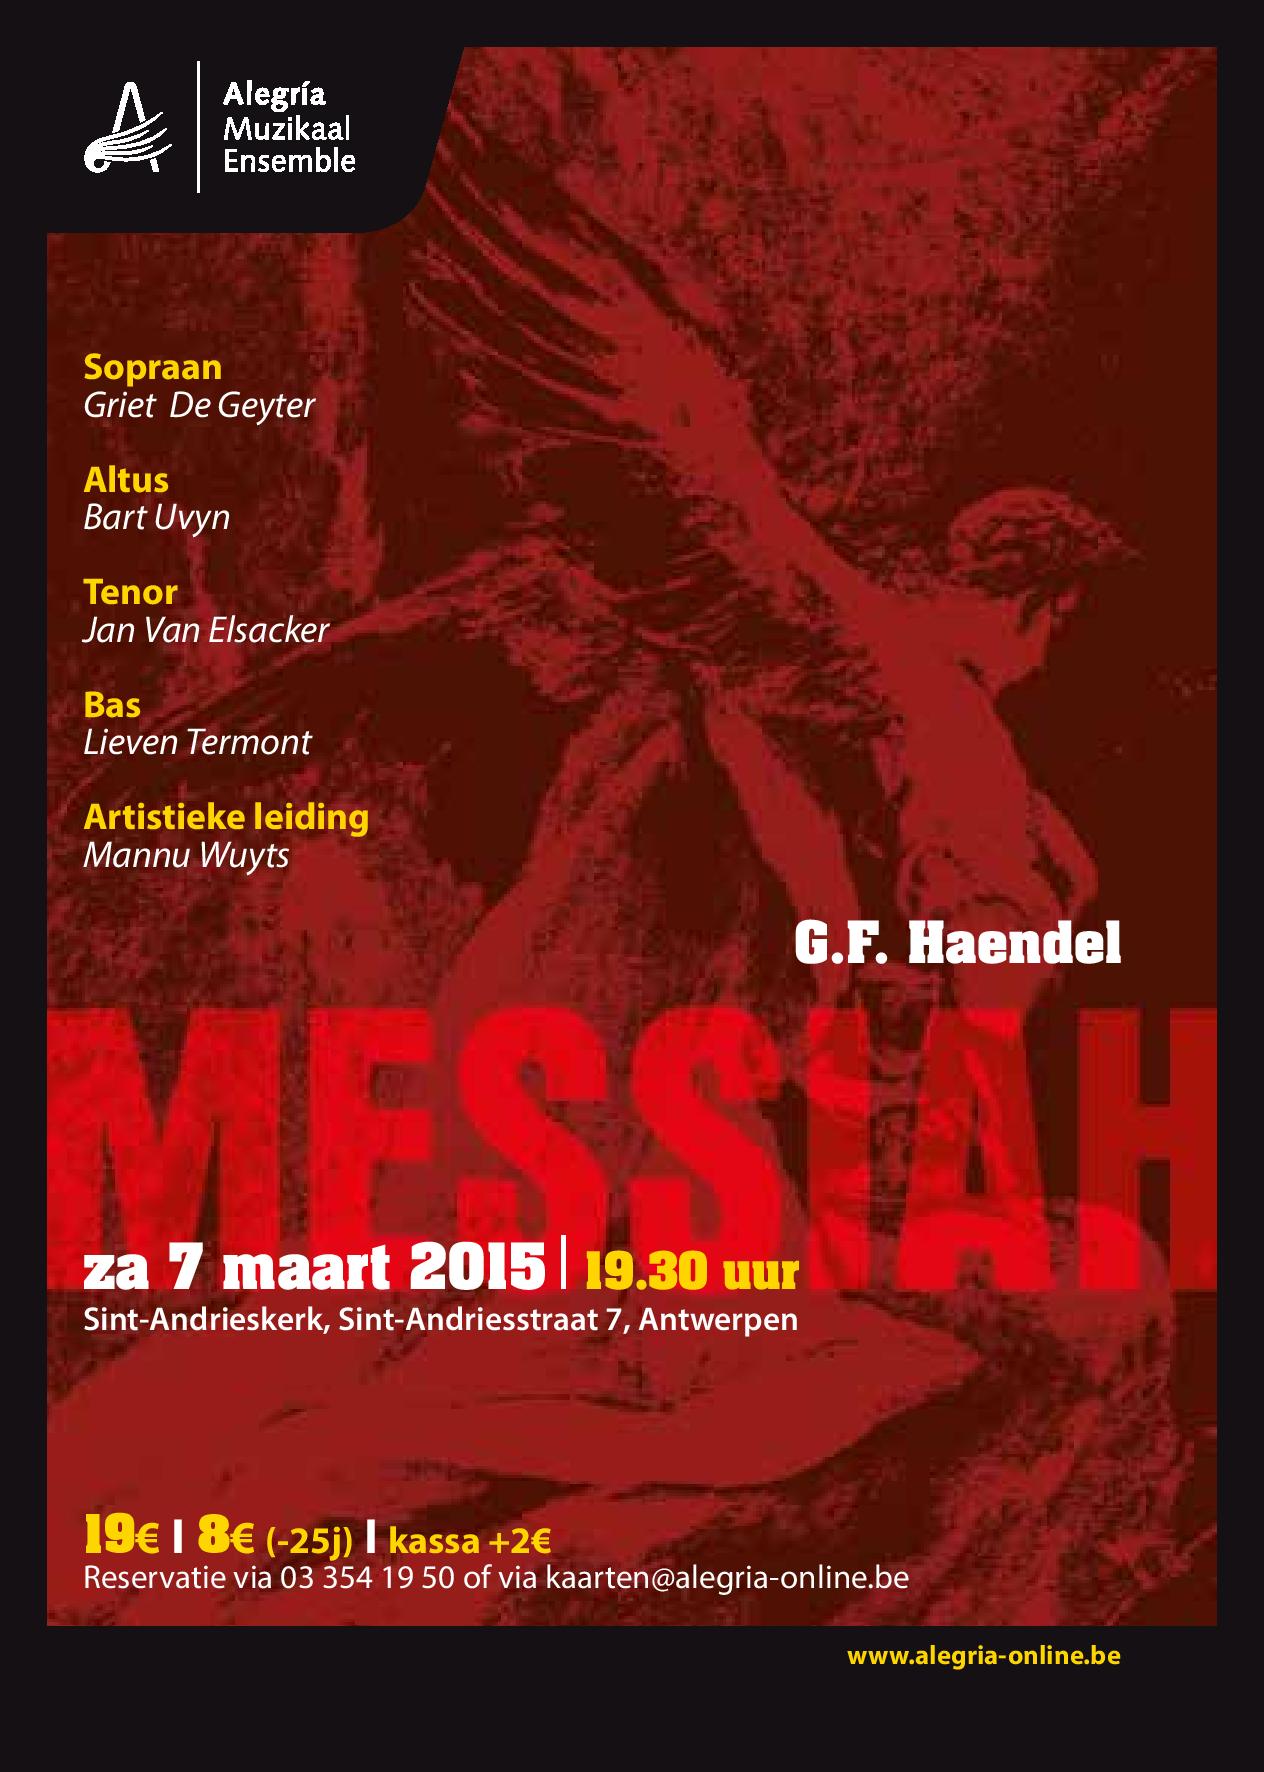 Affiche van het concert van de Messiah